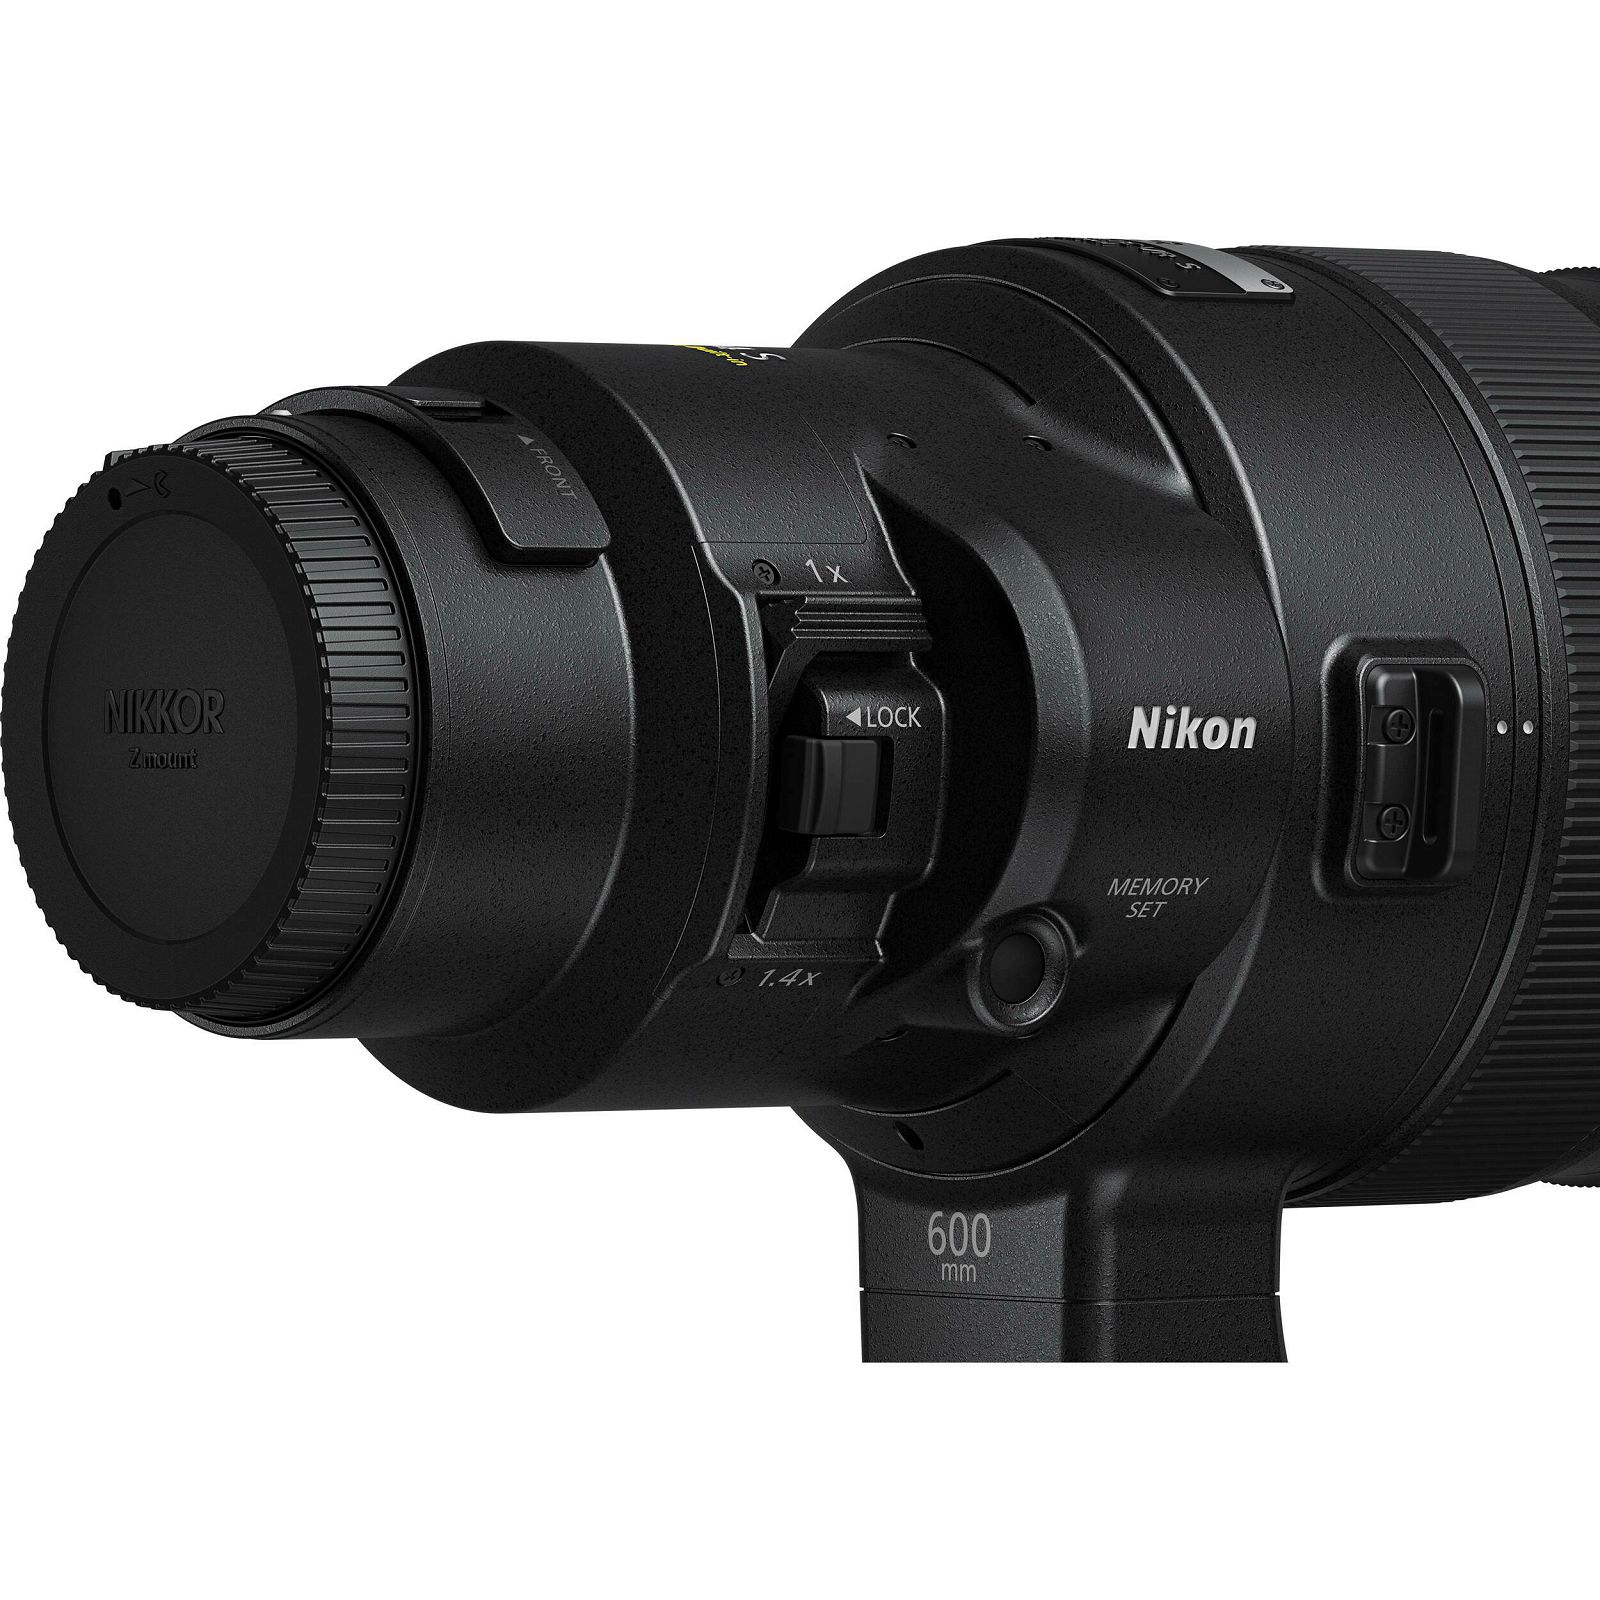 Nikon Z 600mm f/4 TC VR S telefoto objektiv (JMA504DA)